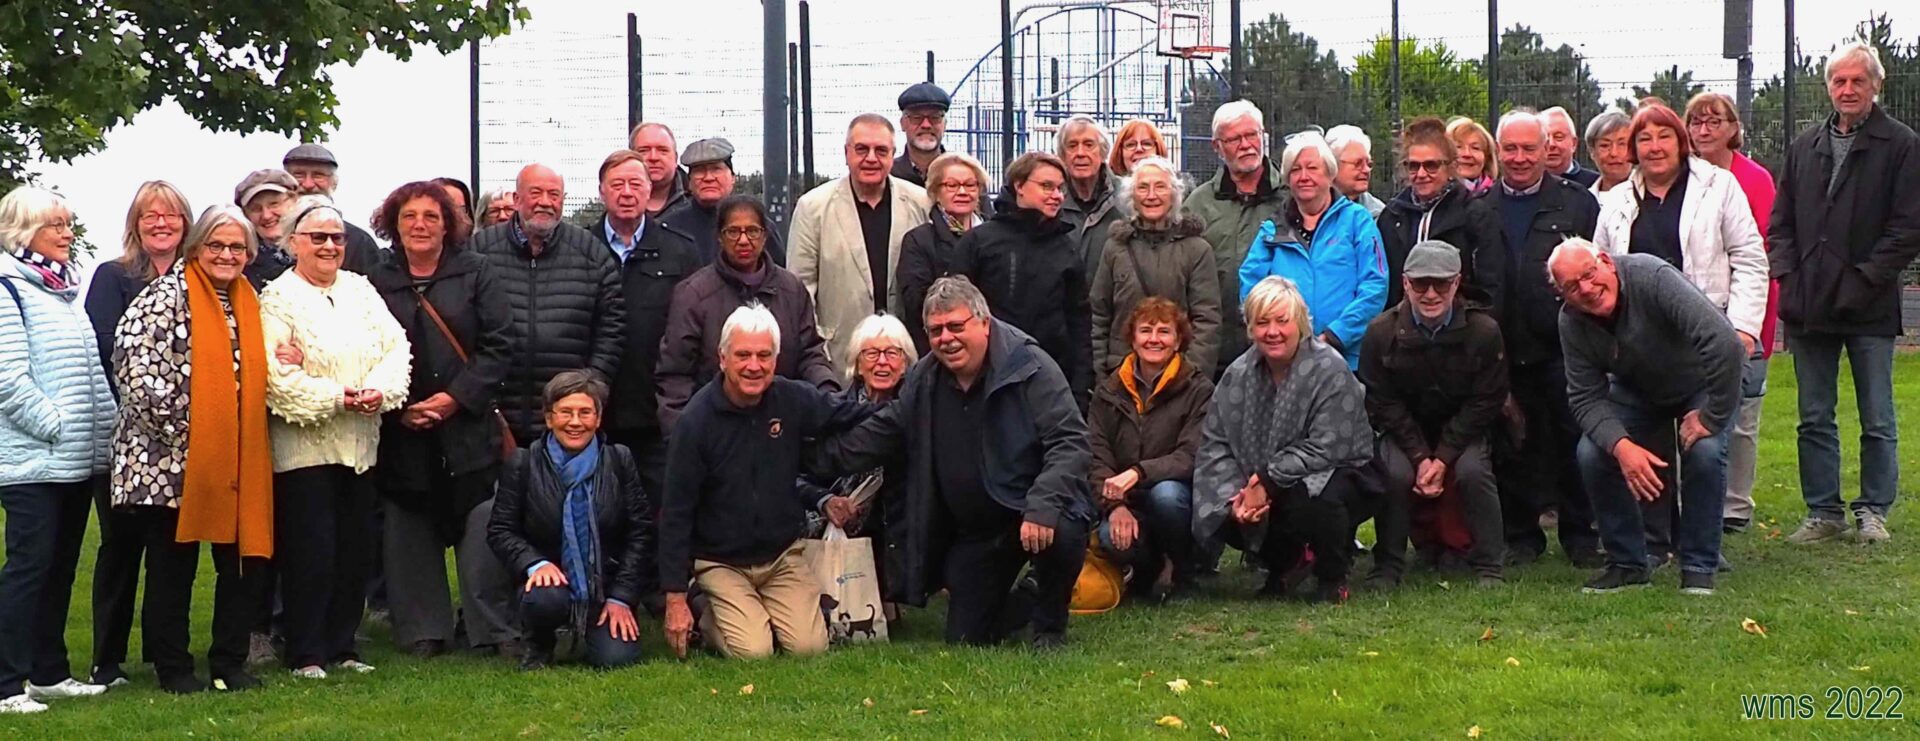 Begegnungsfahrt nach Hastings: 40 Jahre Städte- und Gemeindepartnerschaft Schwerte-Hastings